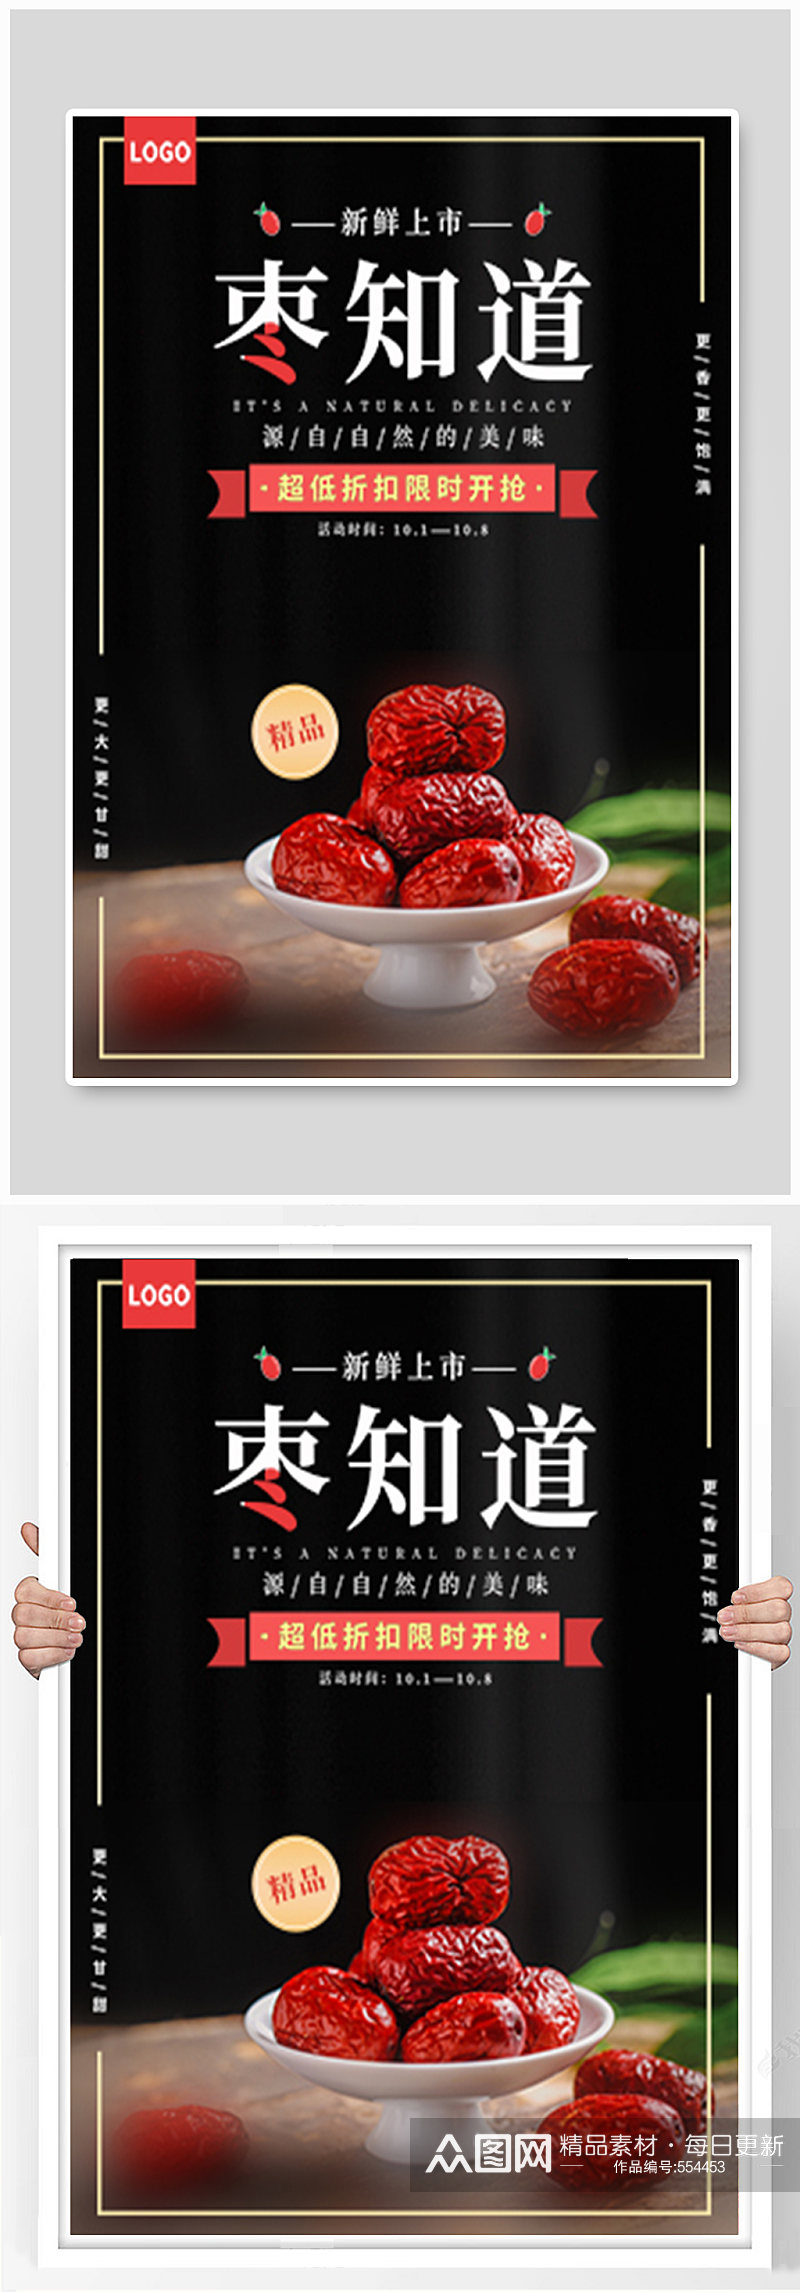 秋季水果红枣促销活动海报素材